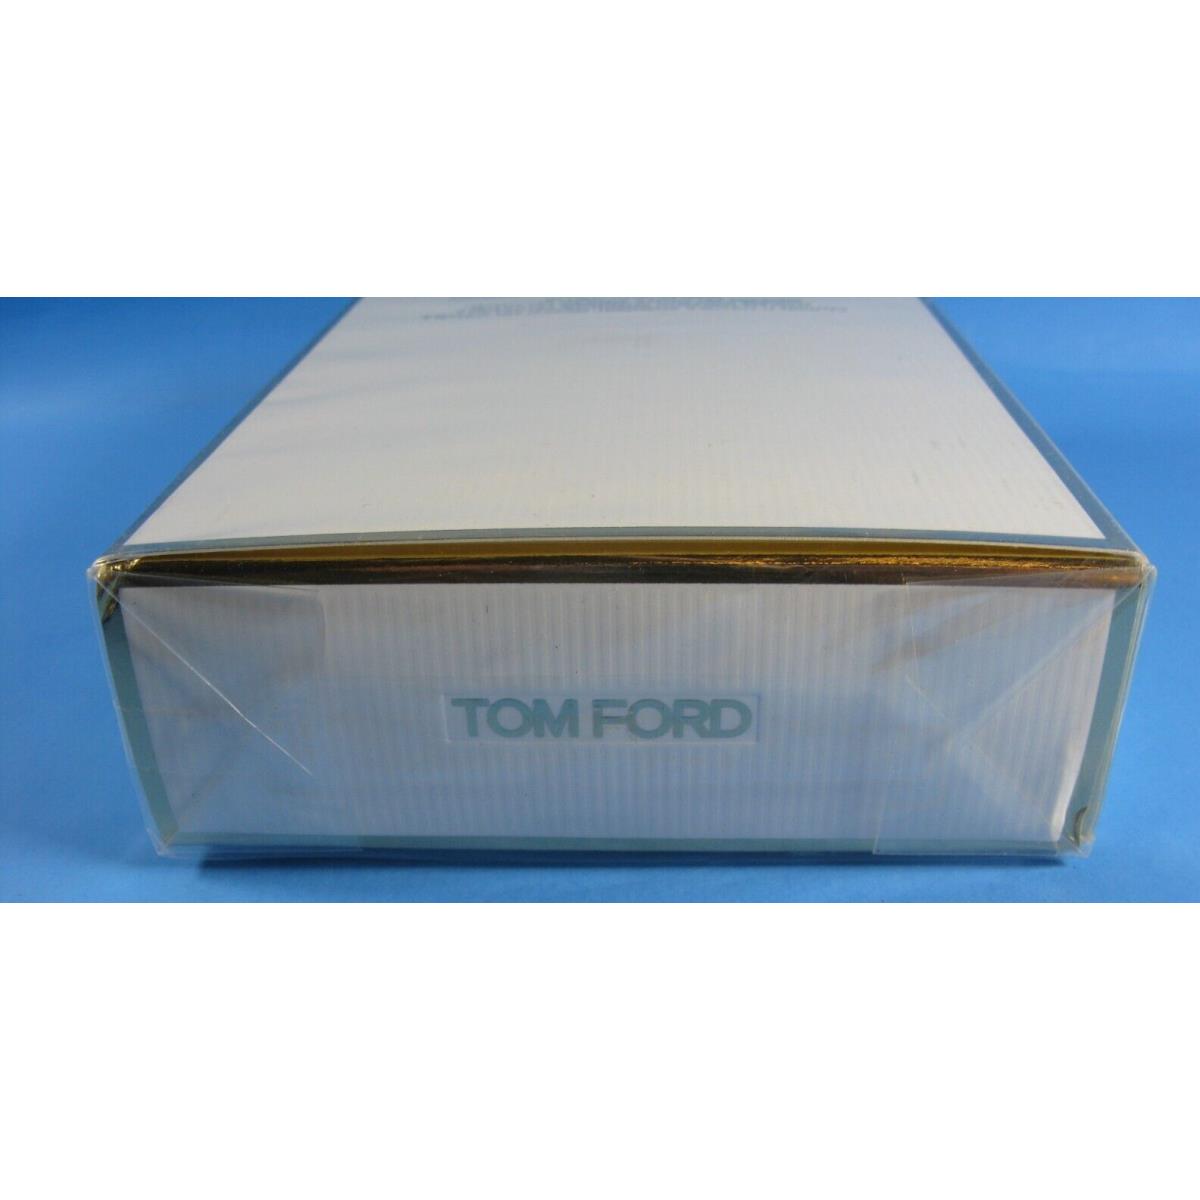 Tom Ford perfumes  - White 7